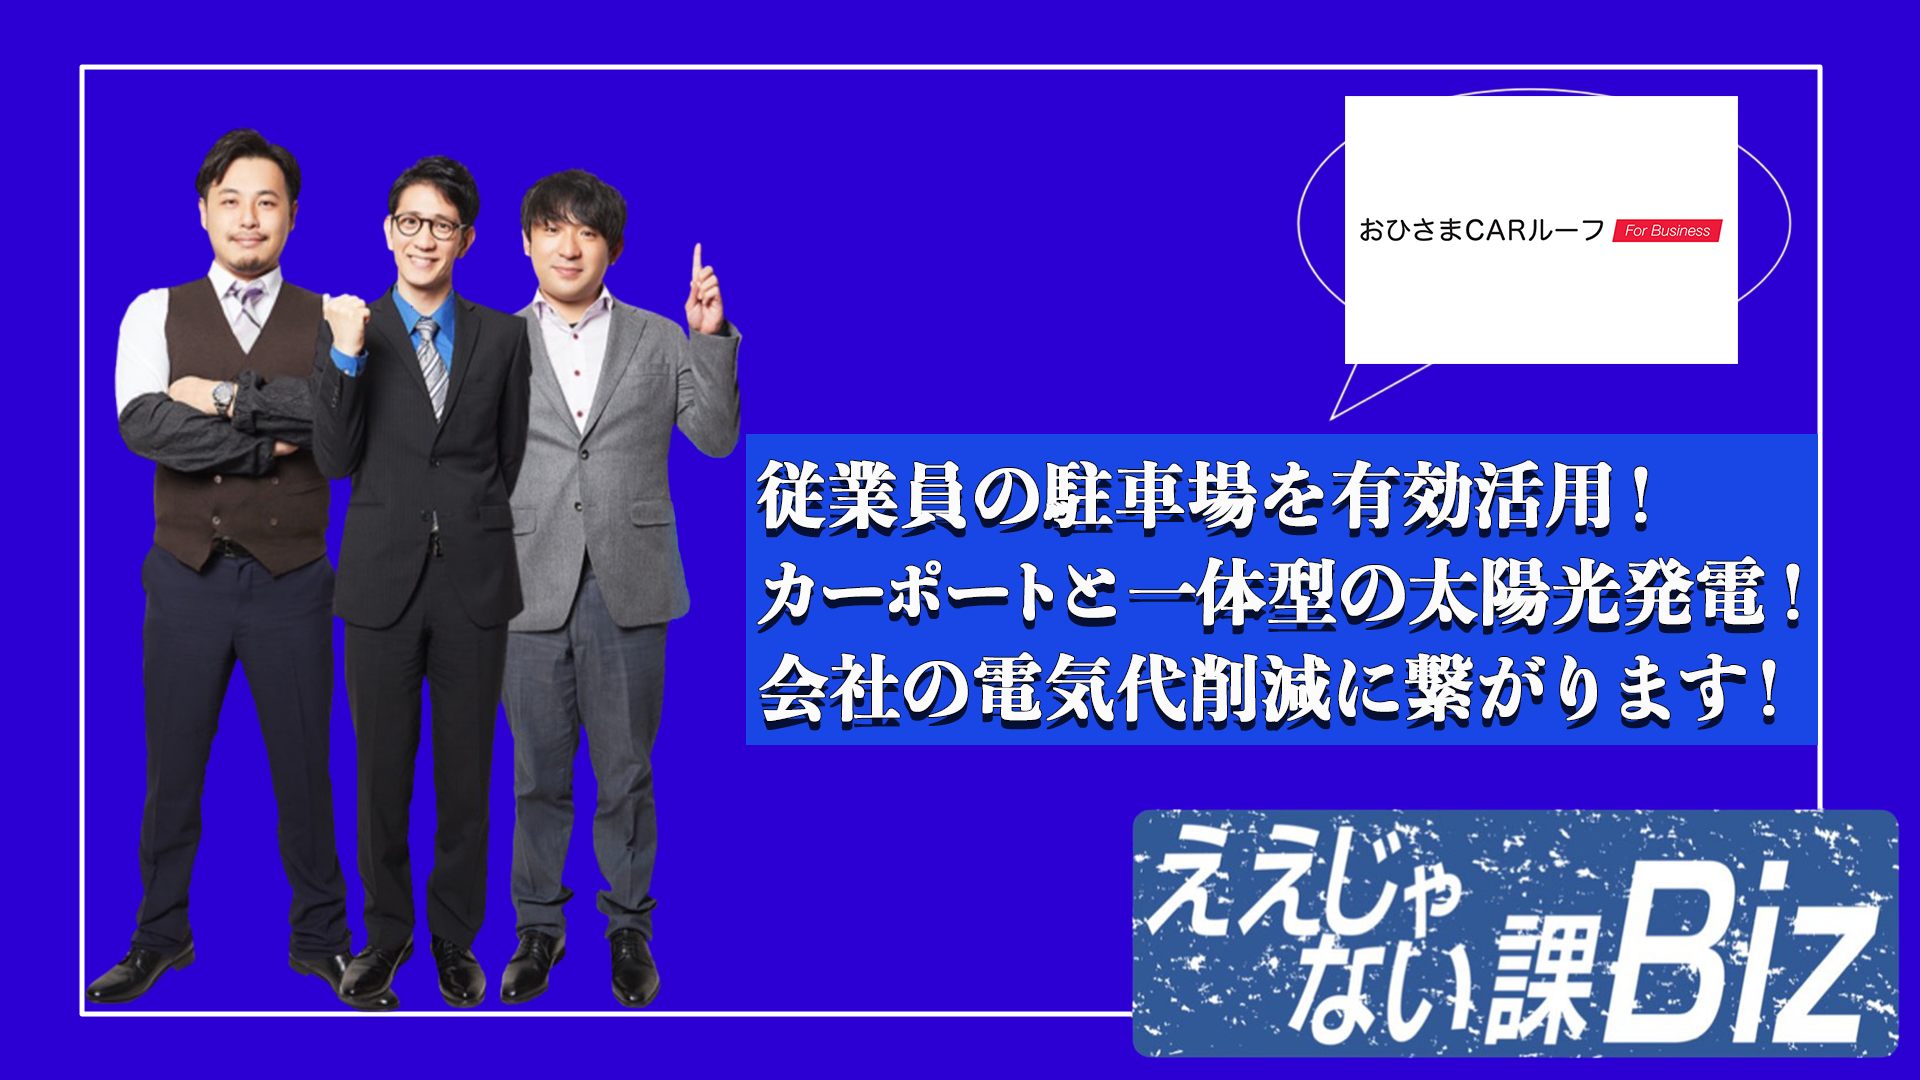 TOKYO ＭＸ「ええじゃない課Biz」でおひさまCARルーフFor Businessが紹介されました